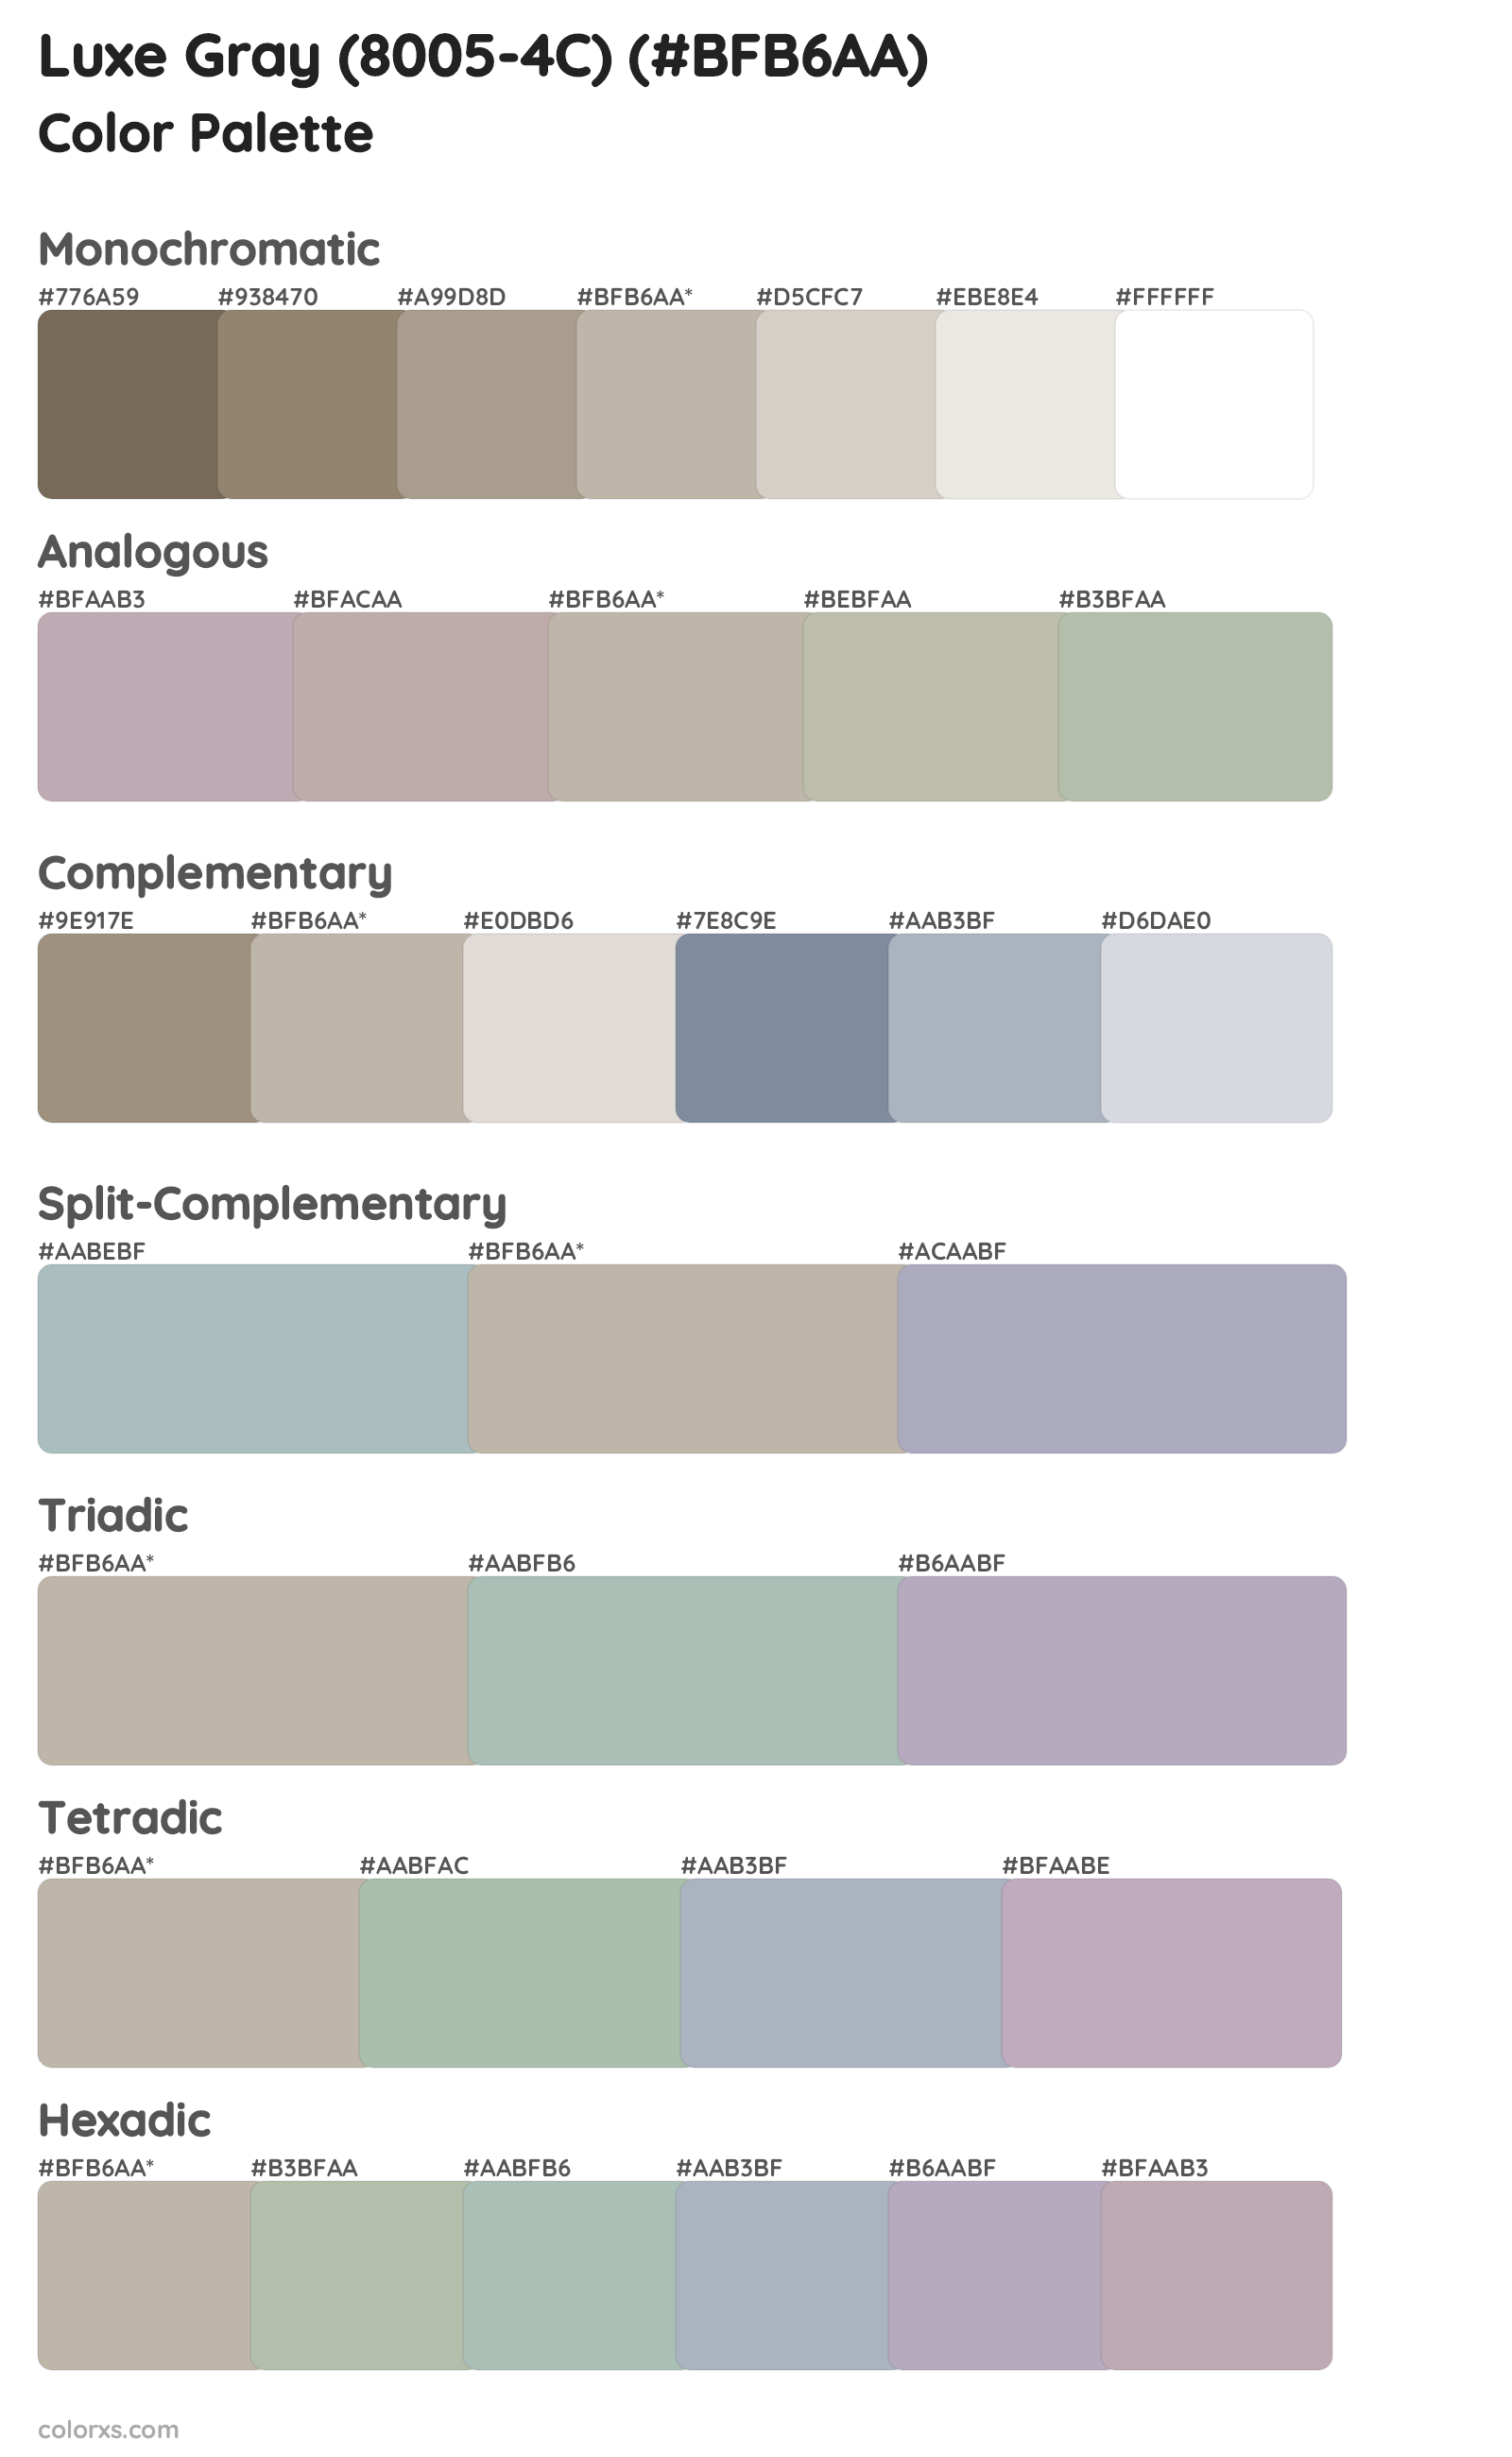 Luxe Gray (8005-4C) Color Scheme Palettes